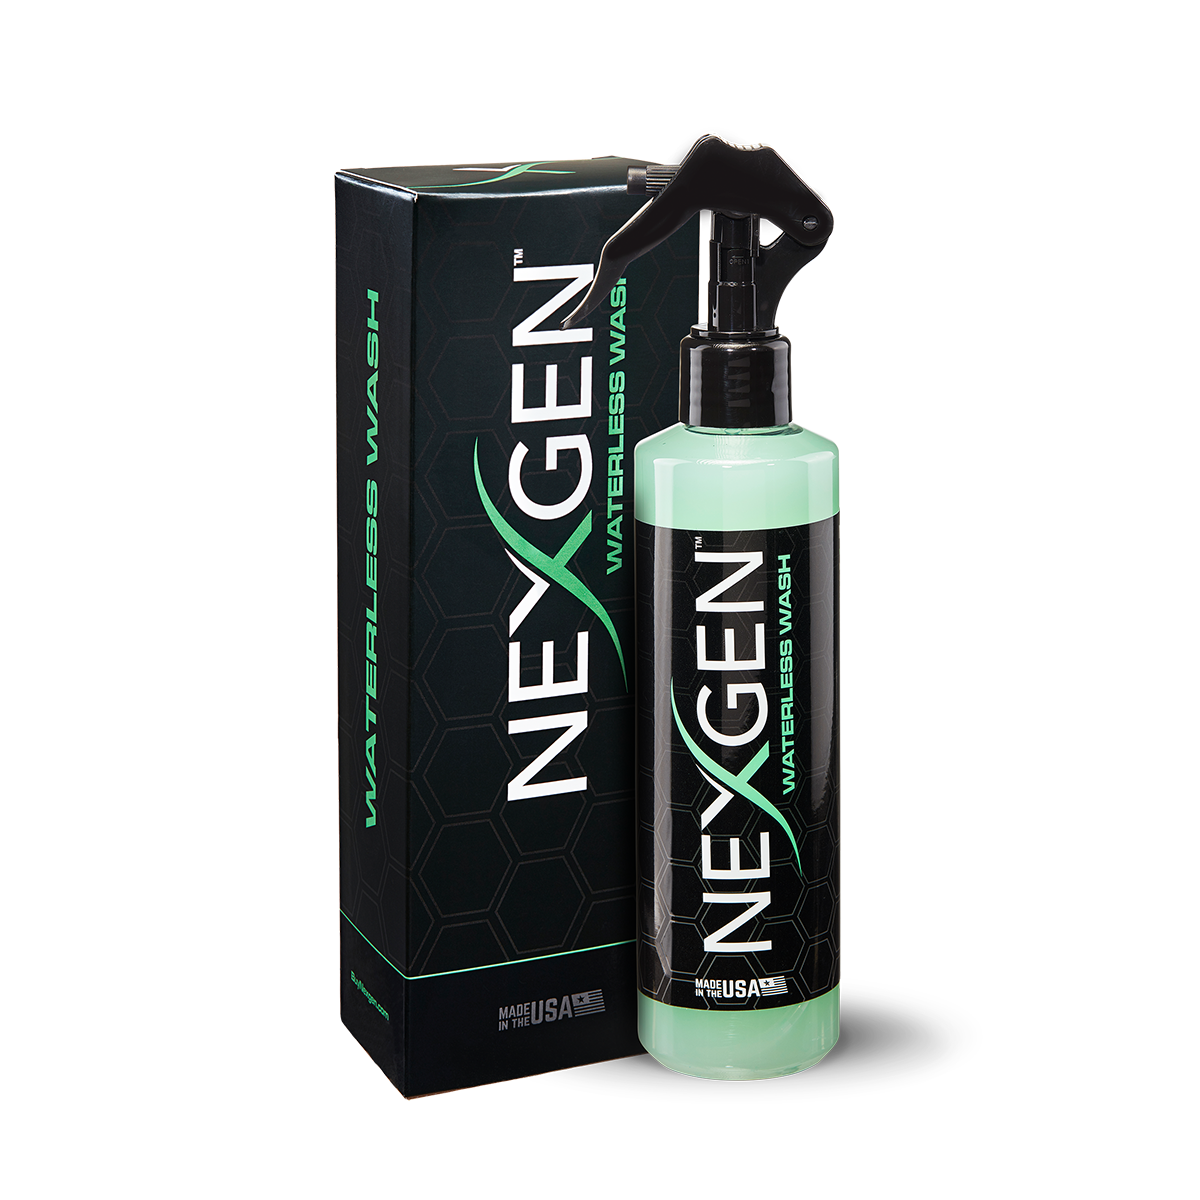 Nexgen Waterless Car Wash - Quality Car Wash Spray 16 OZ 